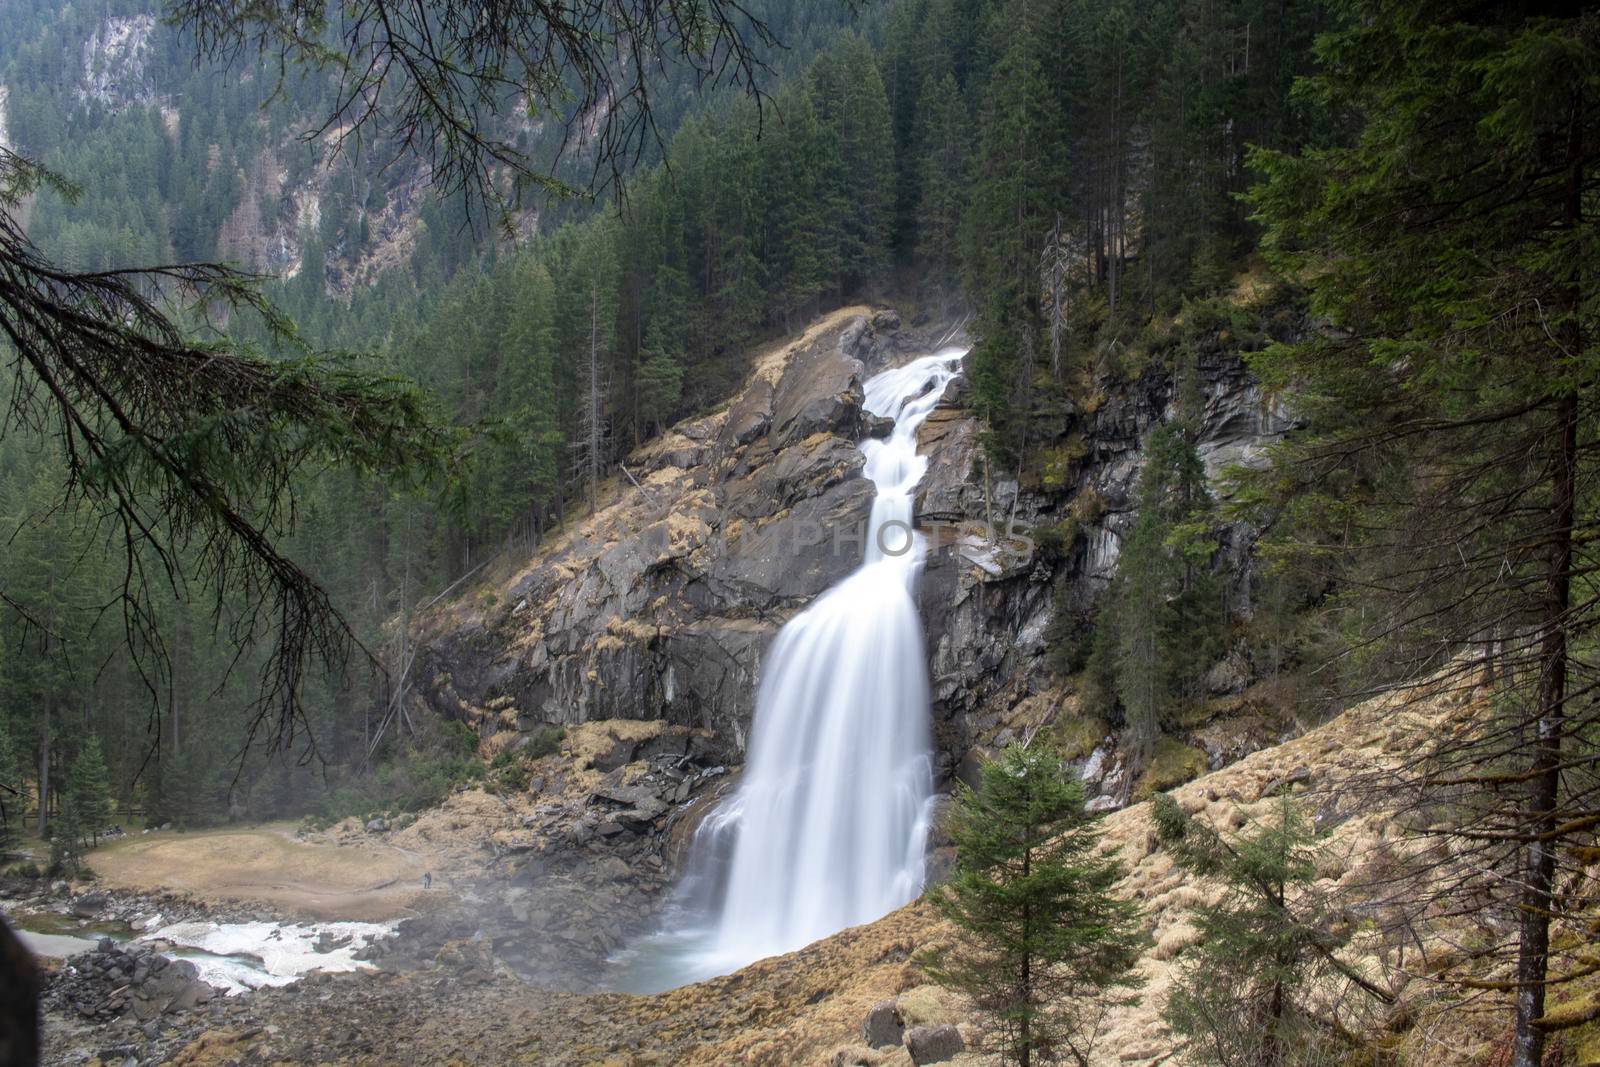 Krimmler waterfall in Austria by ValentimePix